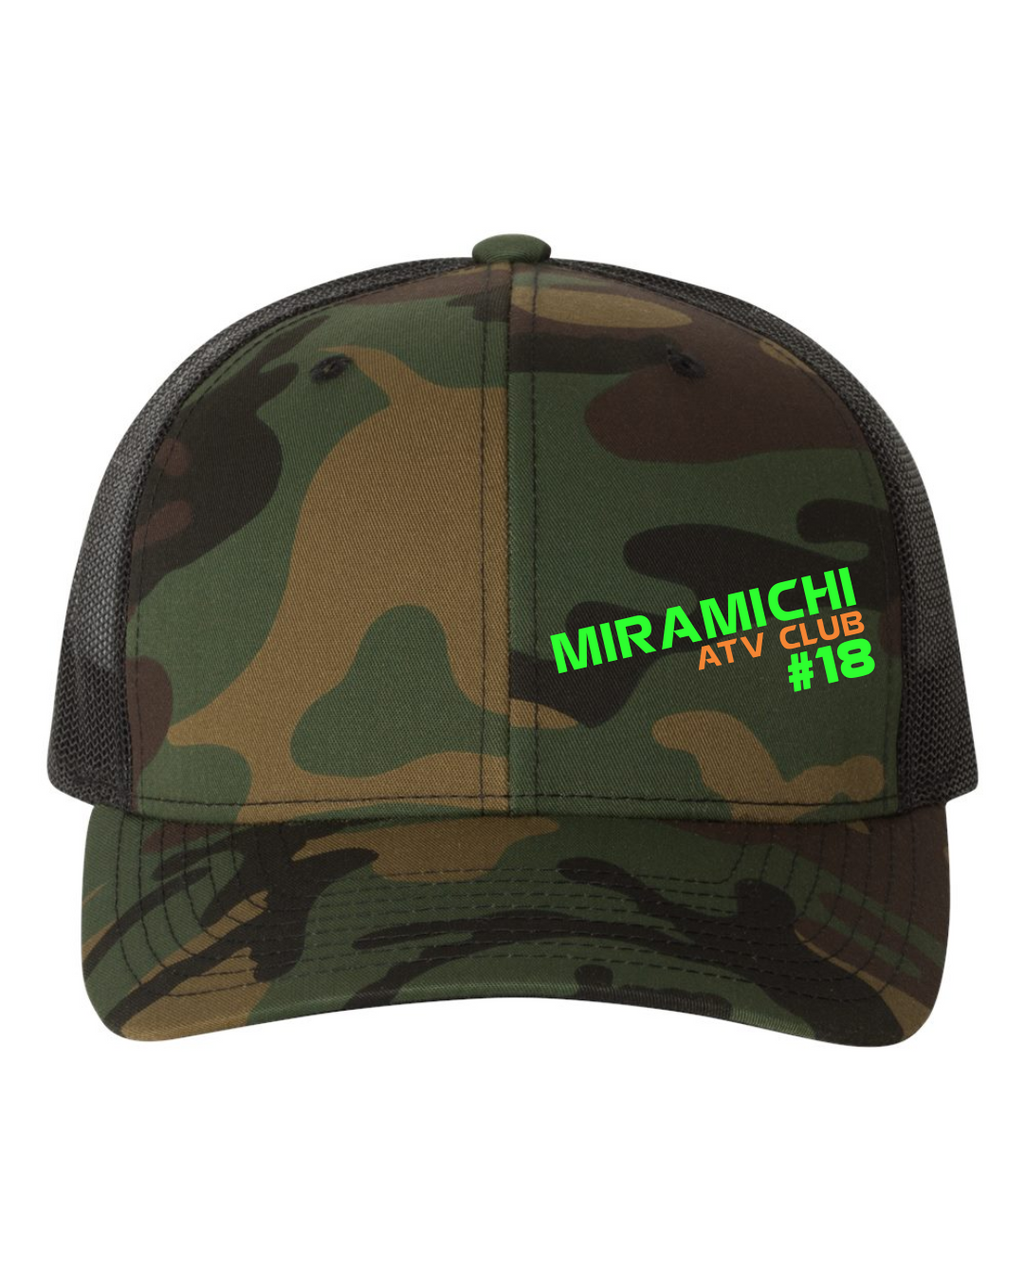 Miramichi ATV Club #18 - Snapback Hat - Yupoong YU6606